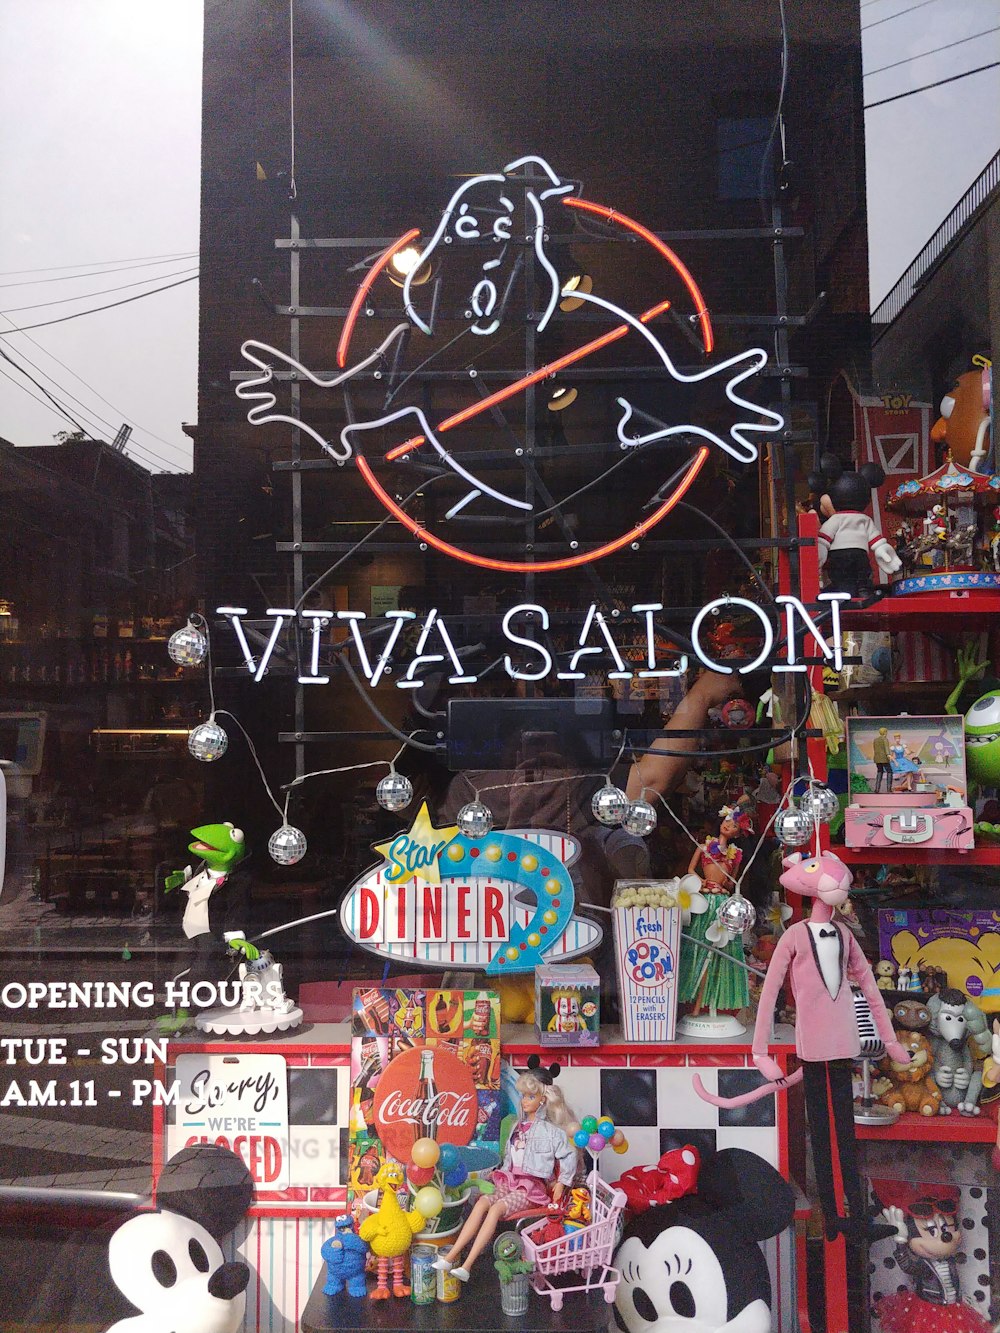 Viva Salon neon sign